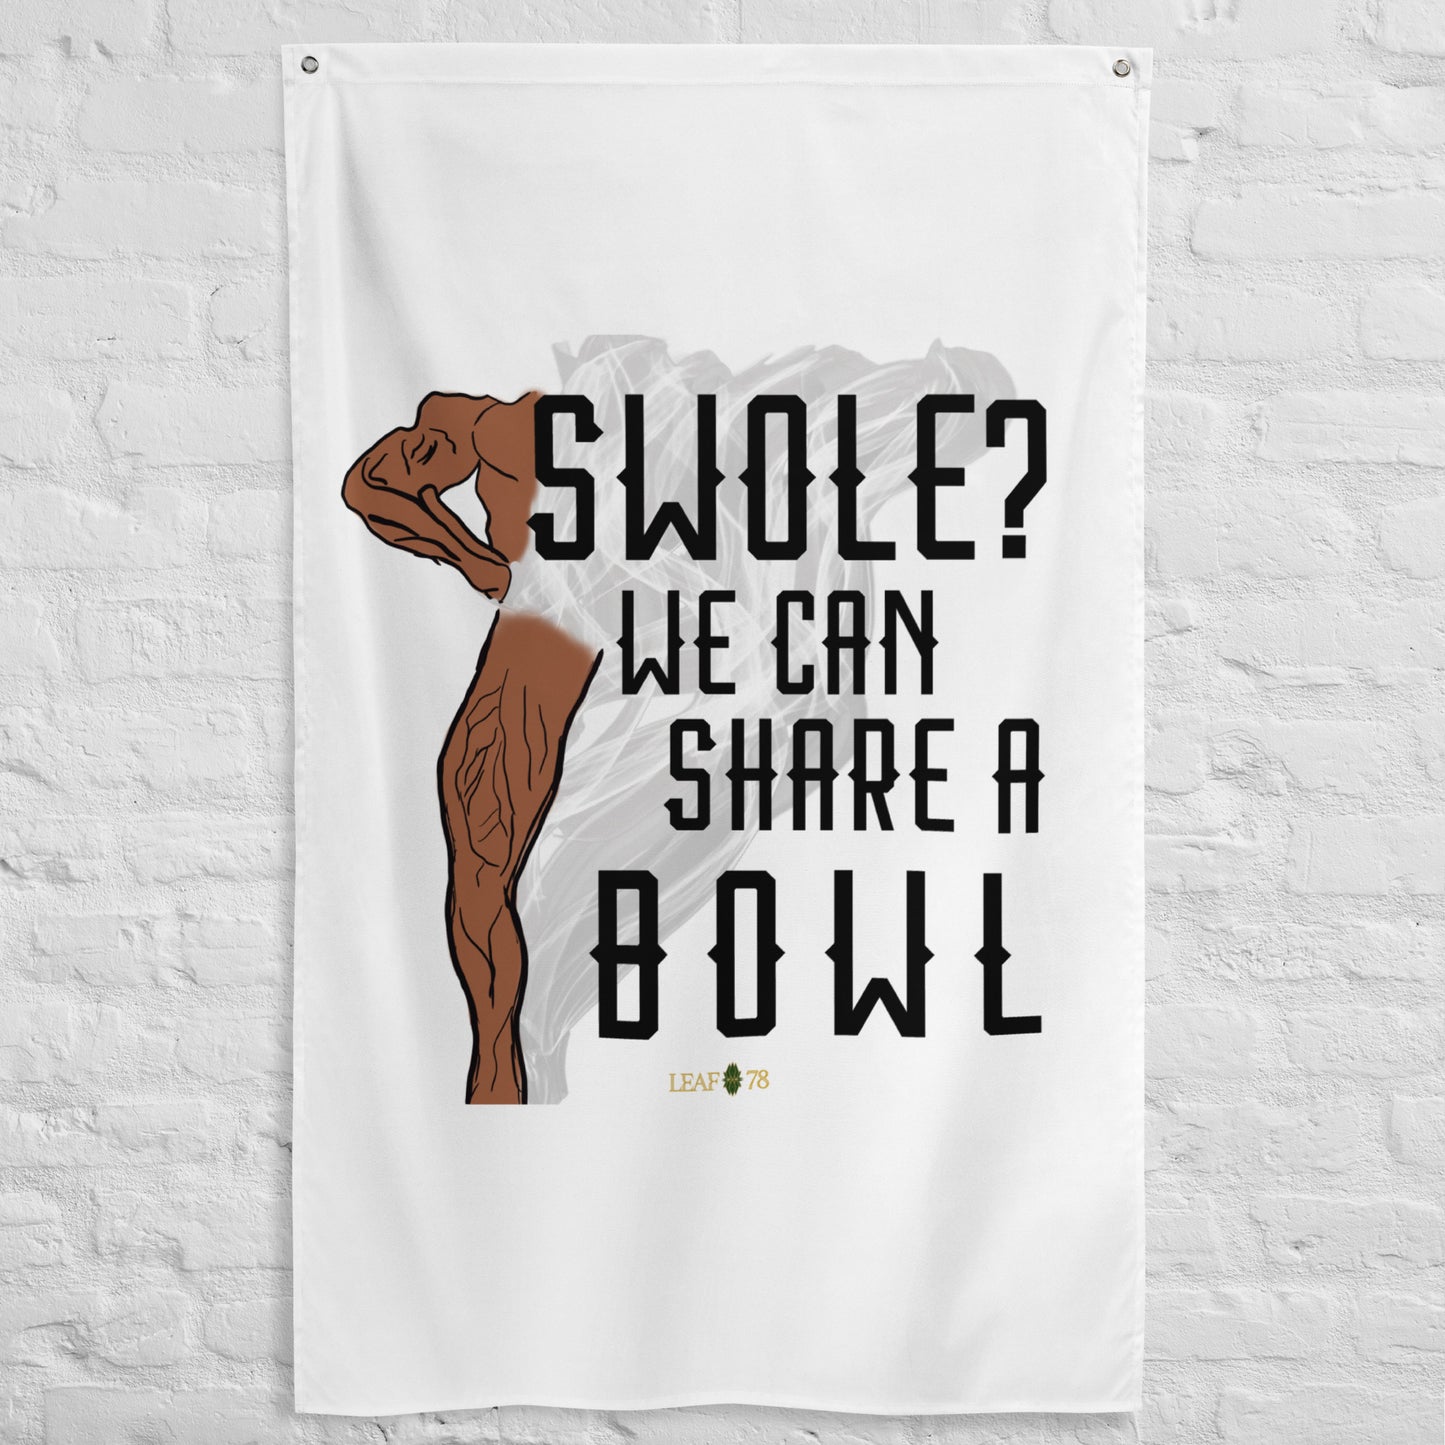 Swole Bowl Flag